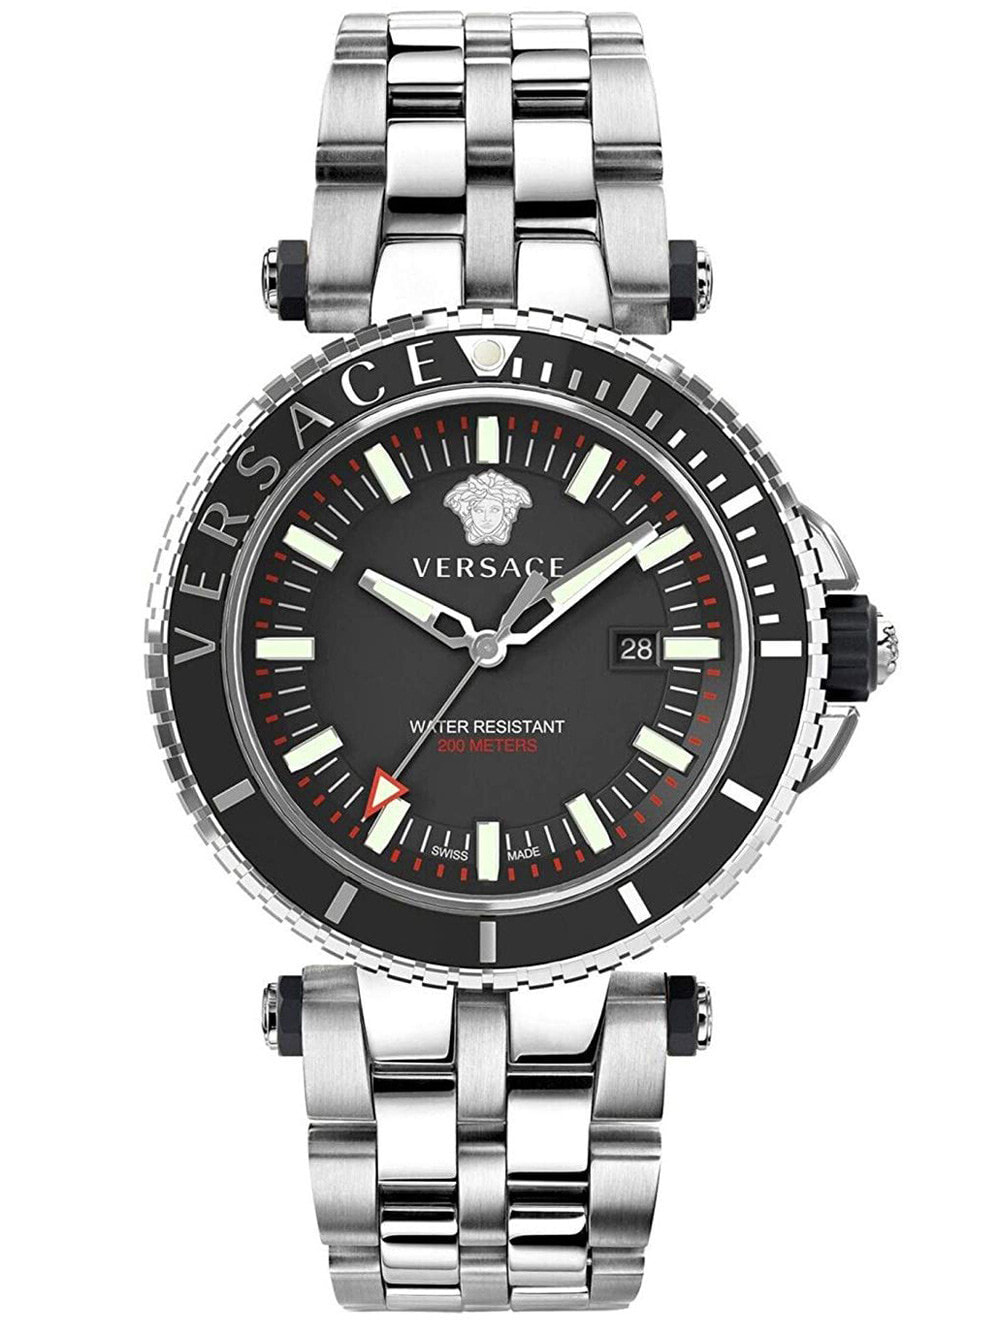 Мужские наручные часы с серебряным браслетом Versace VEAK00318 V-Race Men's 46mm 5ATM